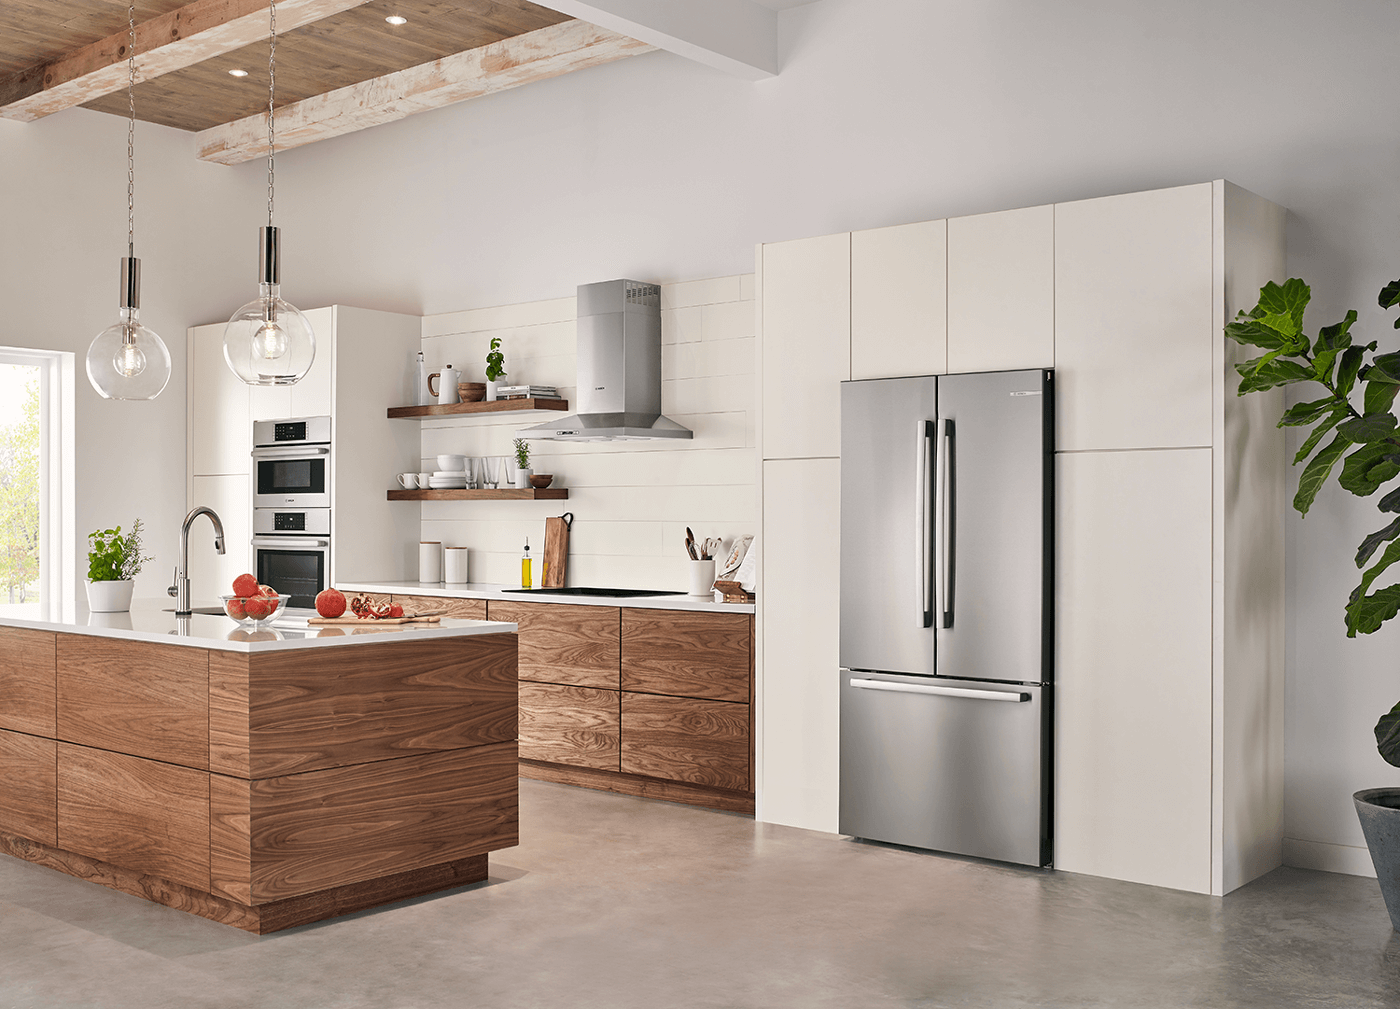 built in refrigerator kitchen design